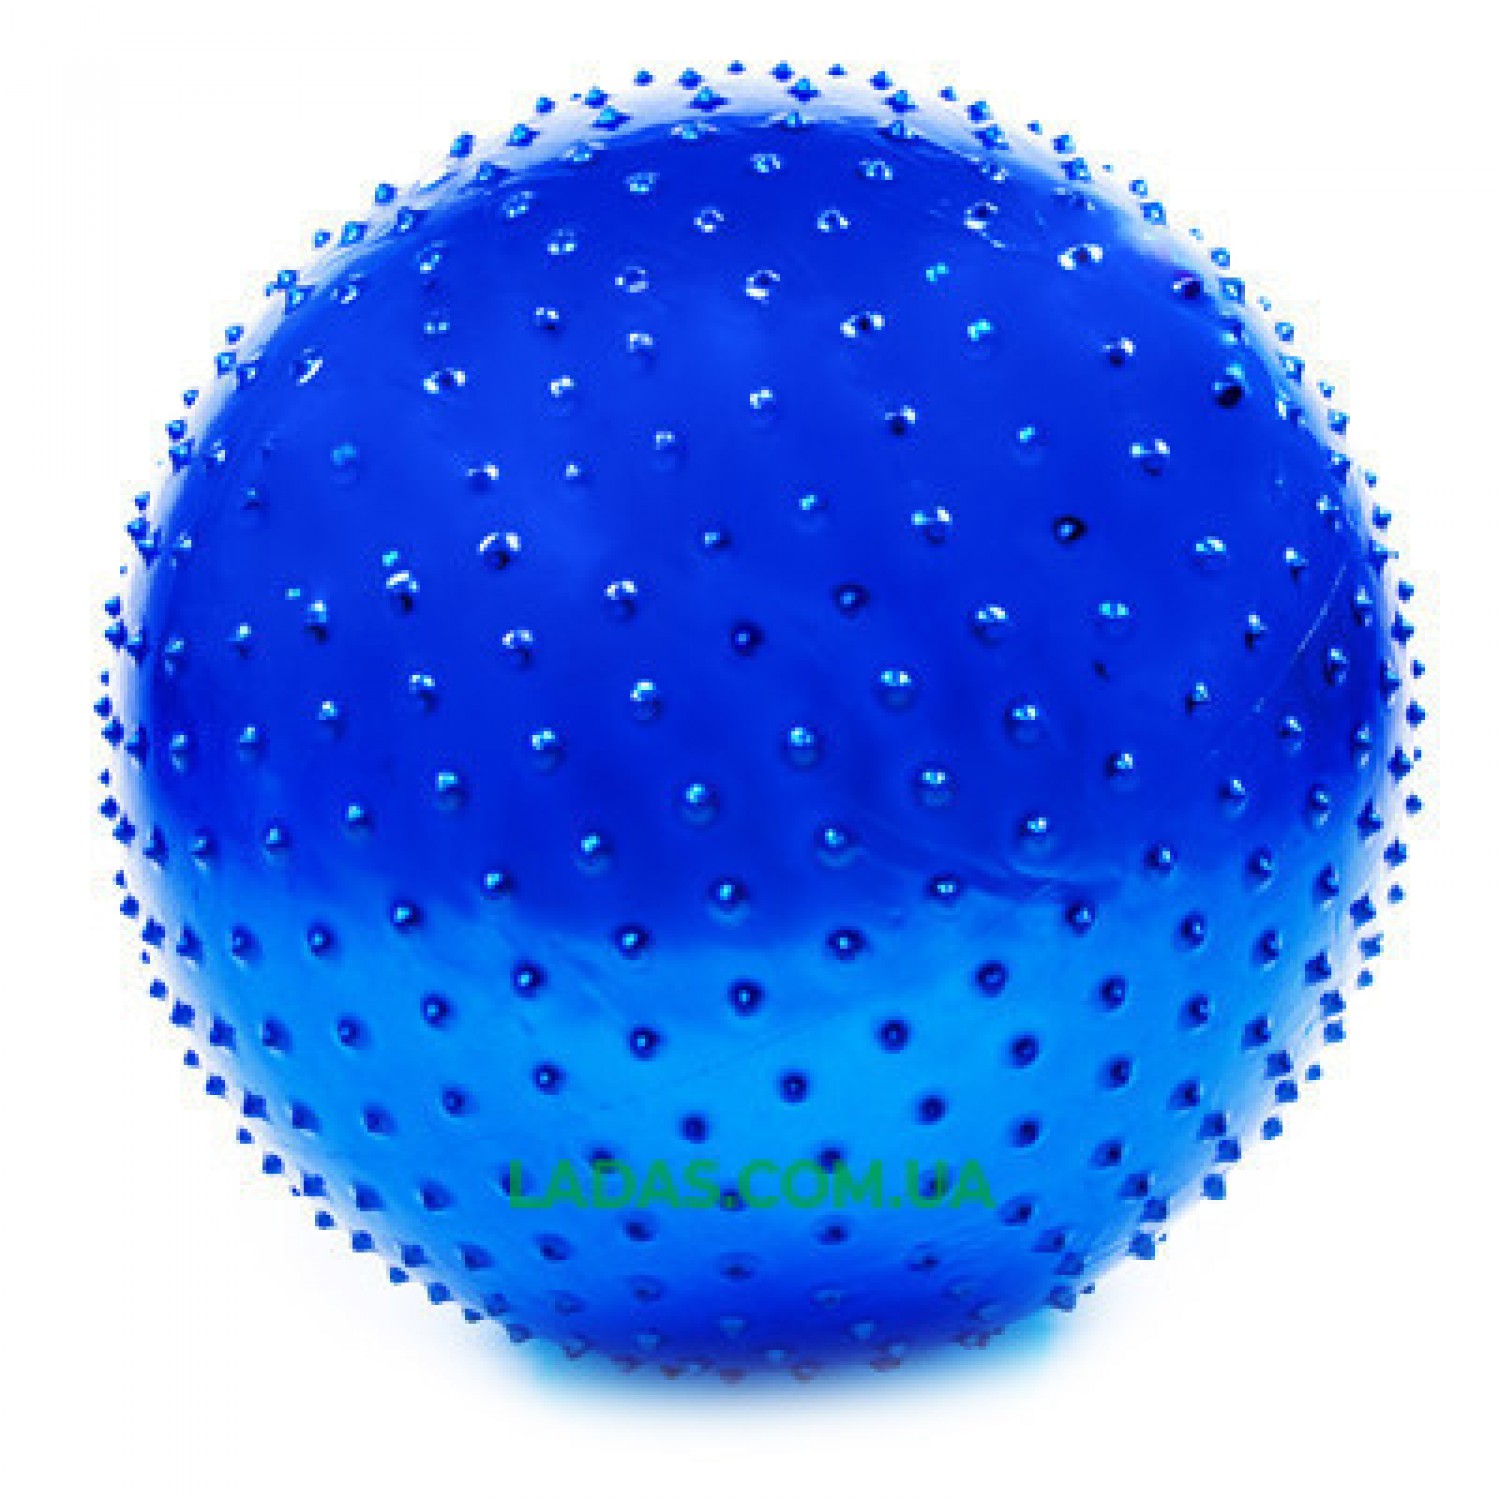 Мяч для фитнеса (фитбол) массажный 65см (PVC, 1000г, цвета в ассор,ABS технолог)